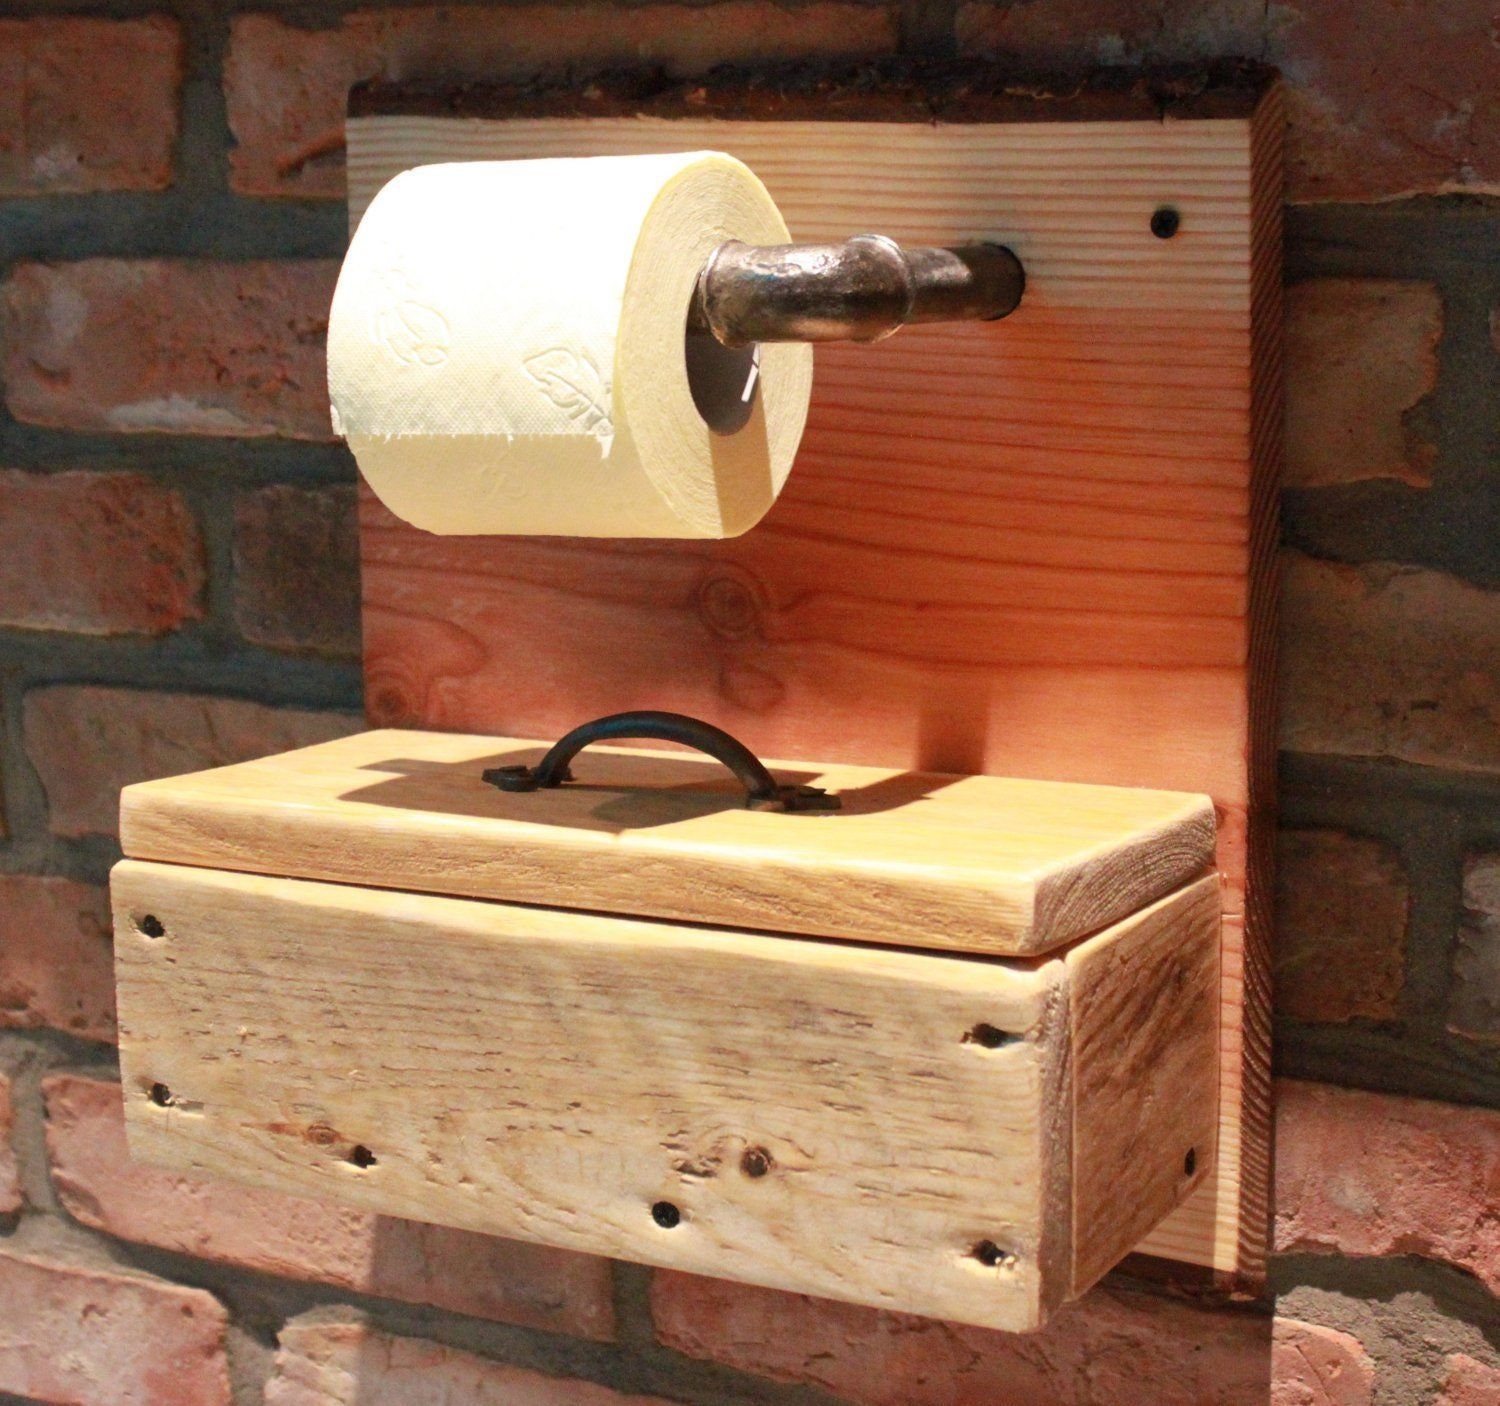 Porte-rouleau de papier toilette sur pied en bois massif ton naturel 70x17cm